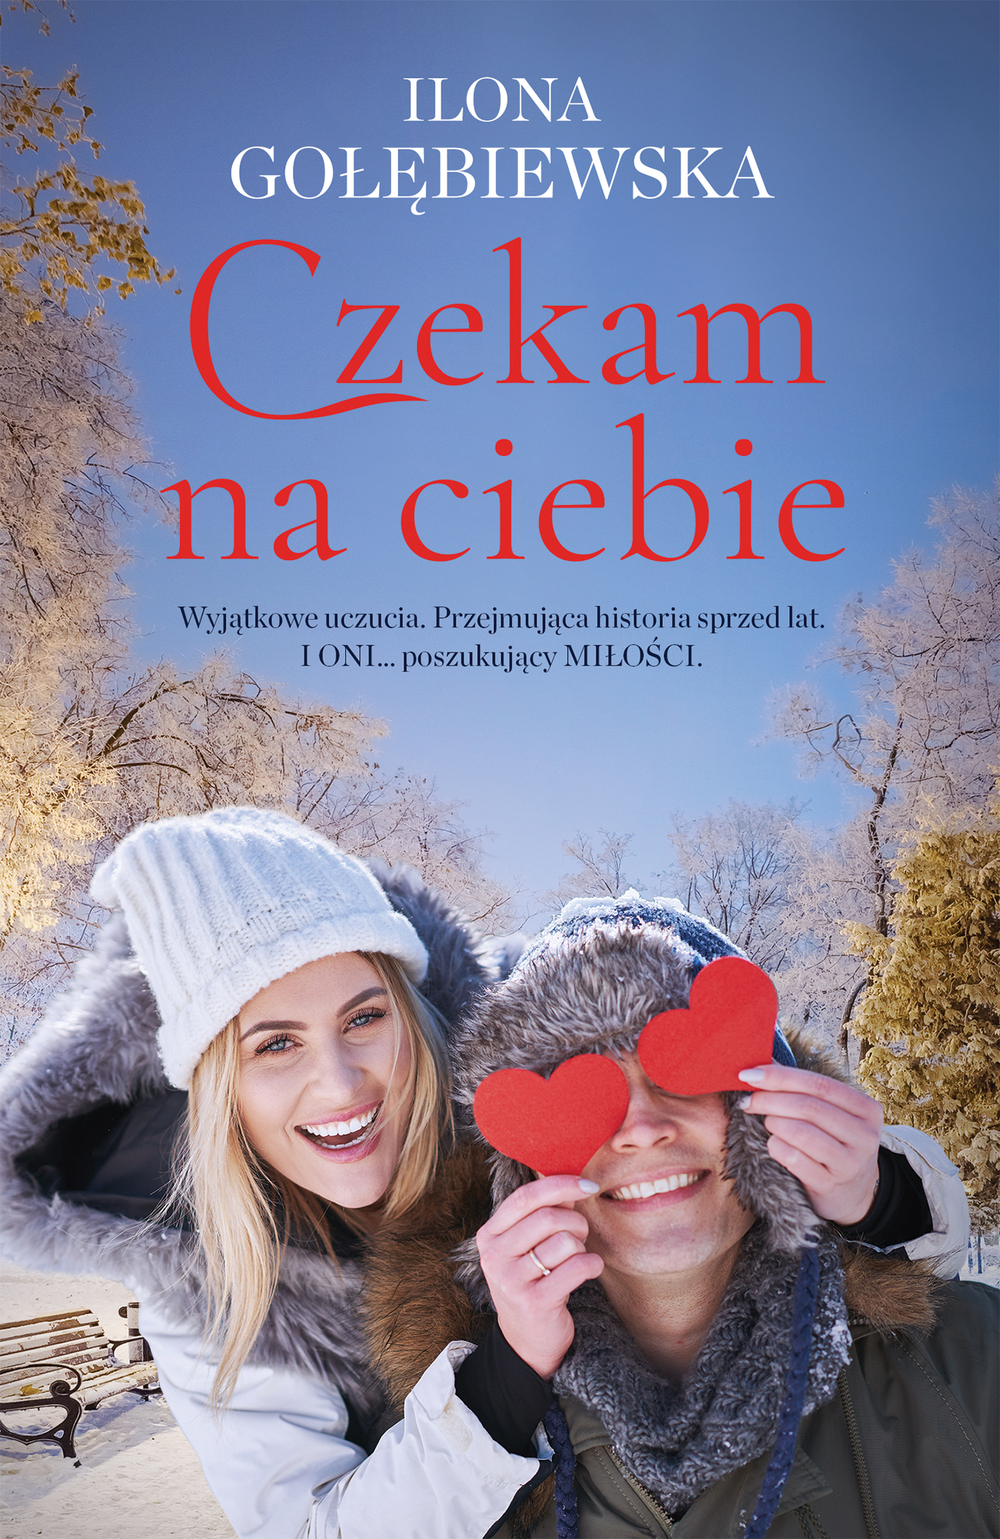 Na okładce w zimowej scenerii uśmiechnięta kobieta i mężczyzna, którego oczy zasłaniają dwa czerwone serduszka